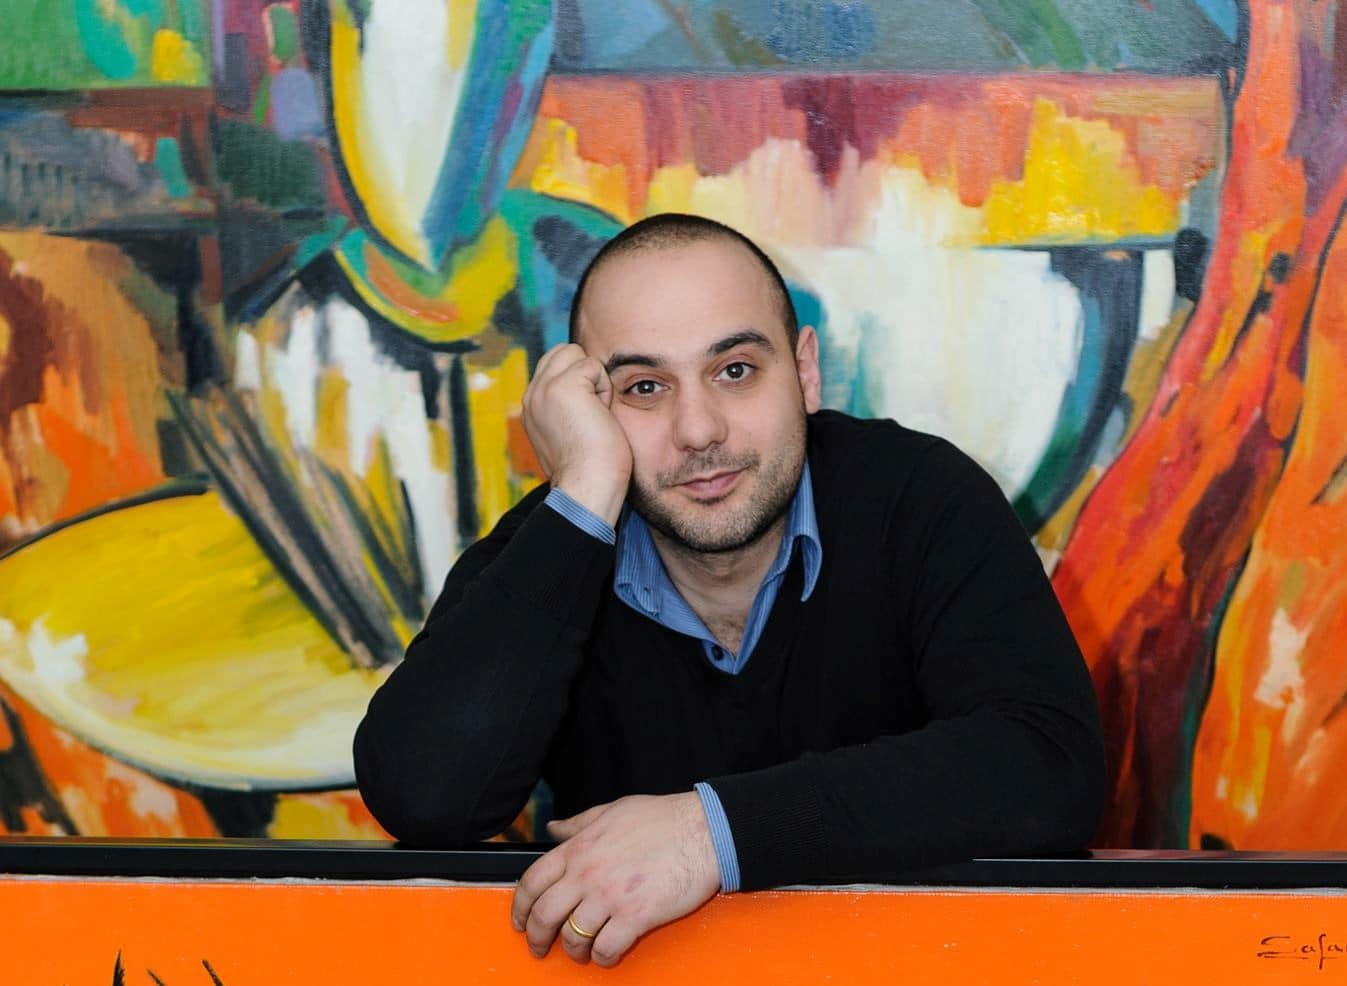 Սուրեն Սաֆարյանը վերընտրվել է նկարիչների միության նախագահի պաշտոնում